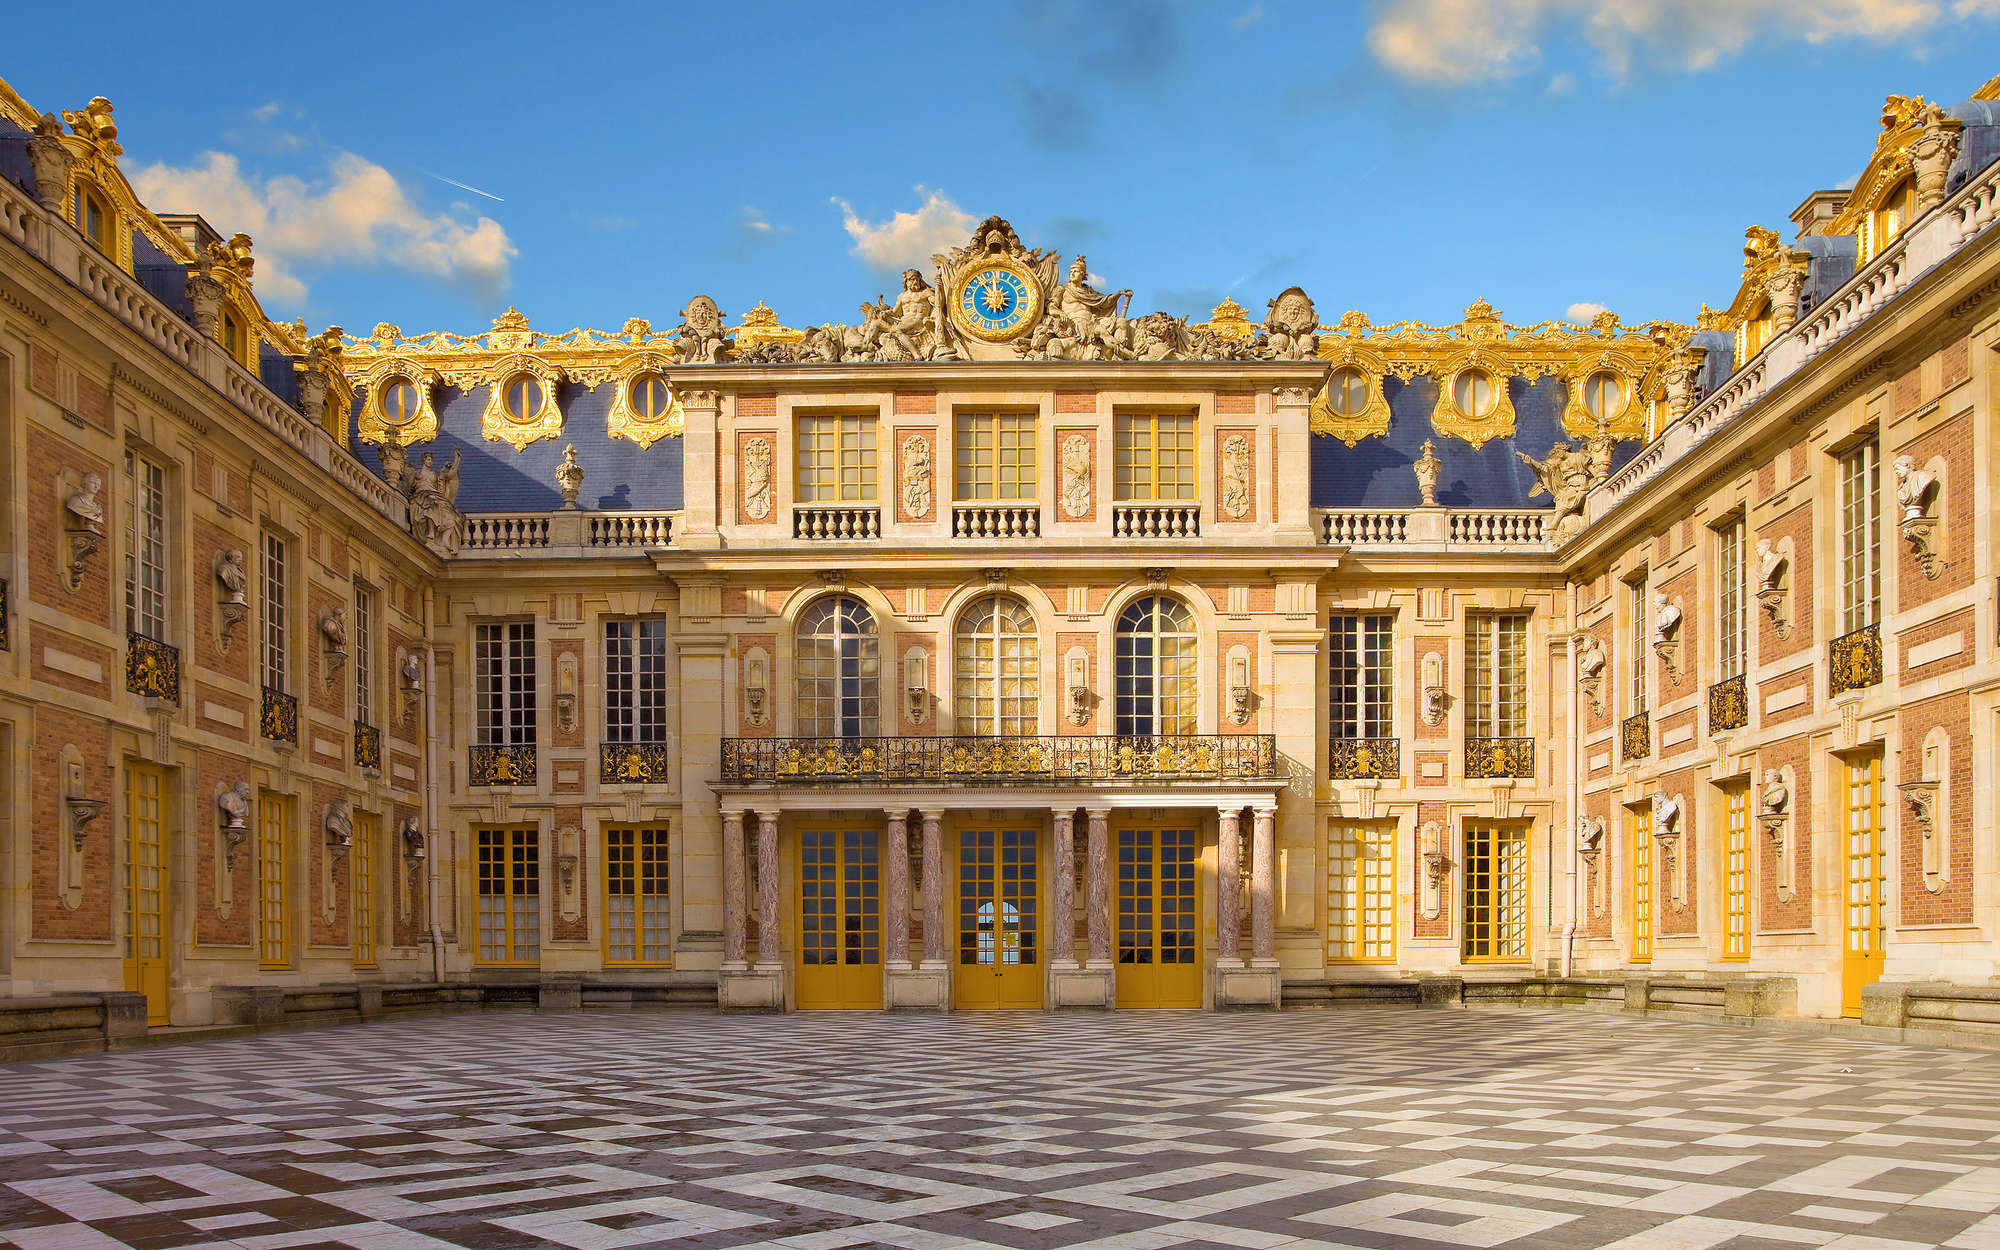             Papel pintable Barroco Palacio de Versalles - tejido no tejido liso perla
        